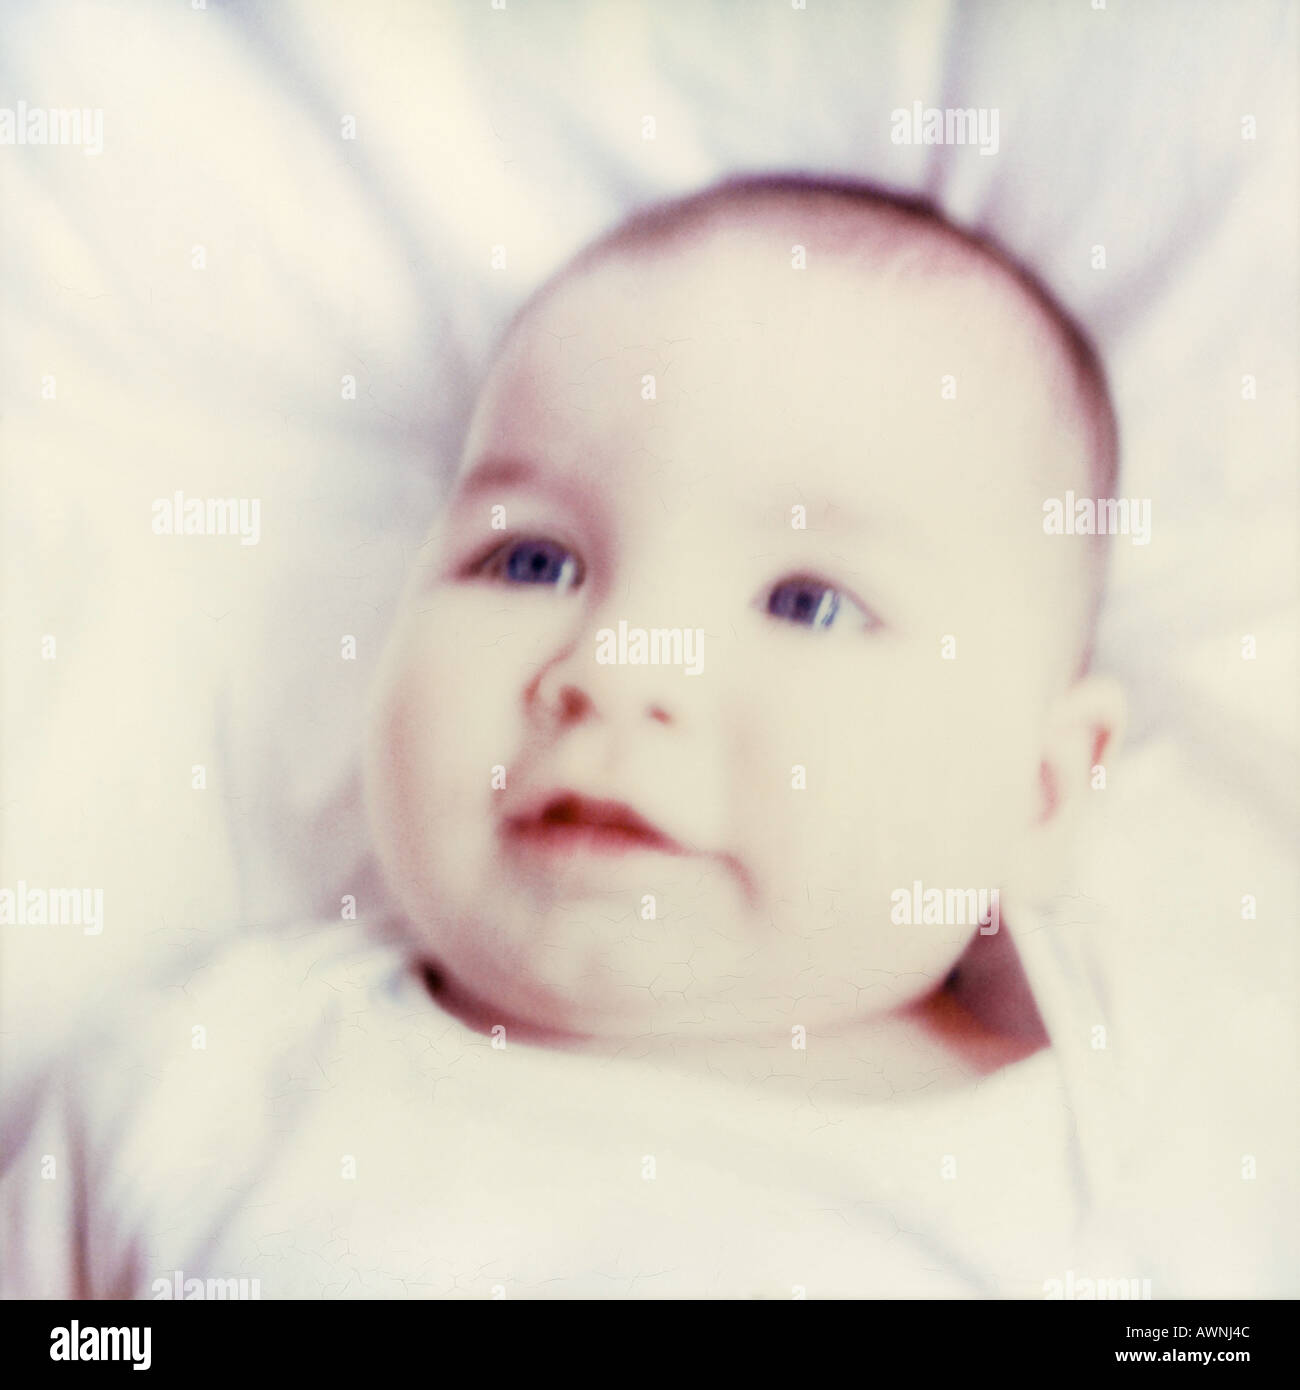 Bébé couché sur le dos, close-up, blurred Banque D'Images